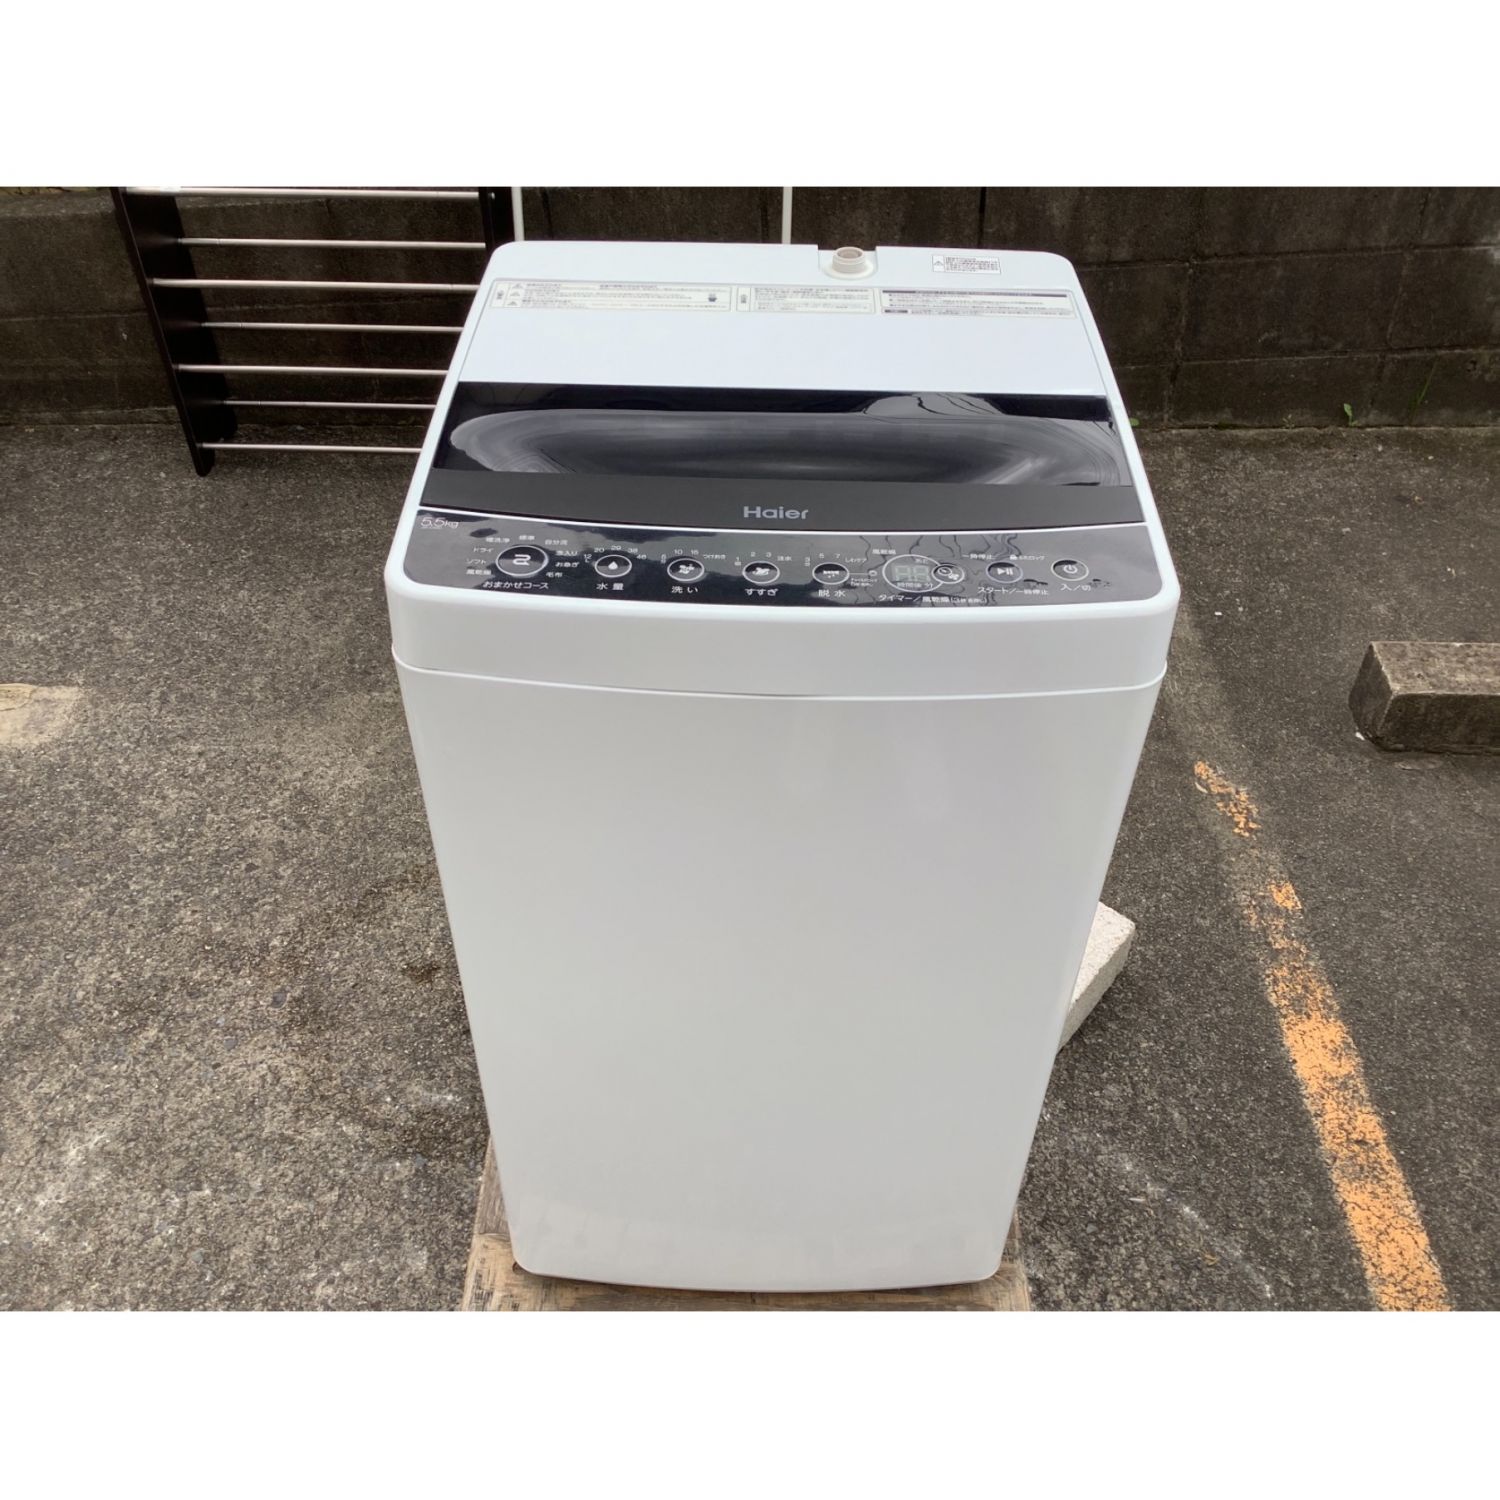 安心の1年保証❗️ Haier 全自動洗濯機 JW-C55D 5.5kg 2020年製 - 千葉 